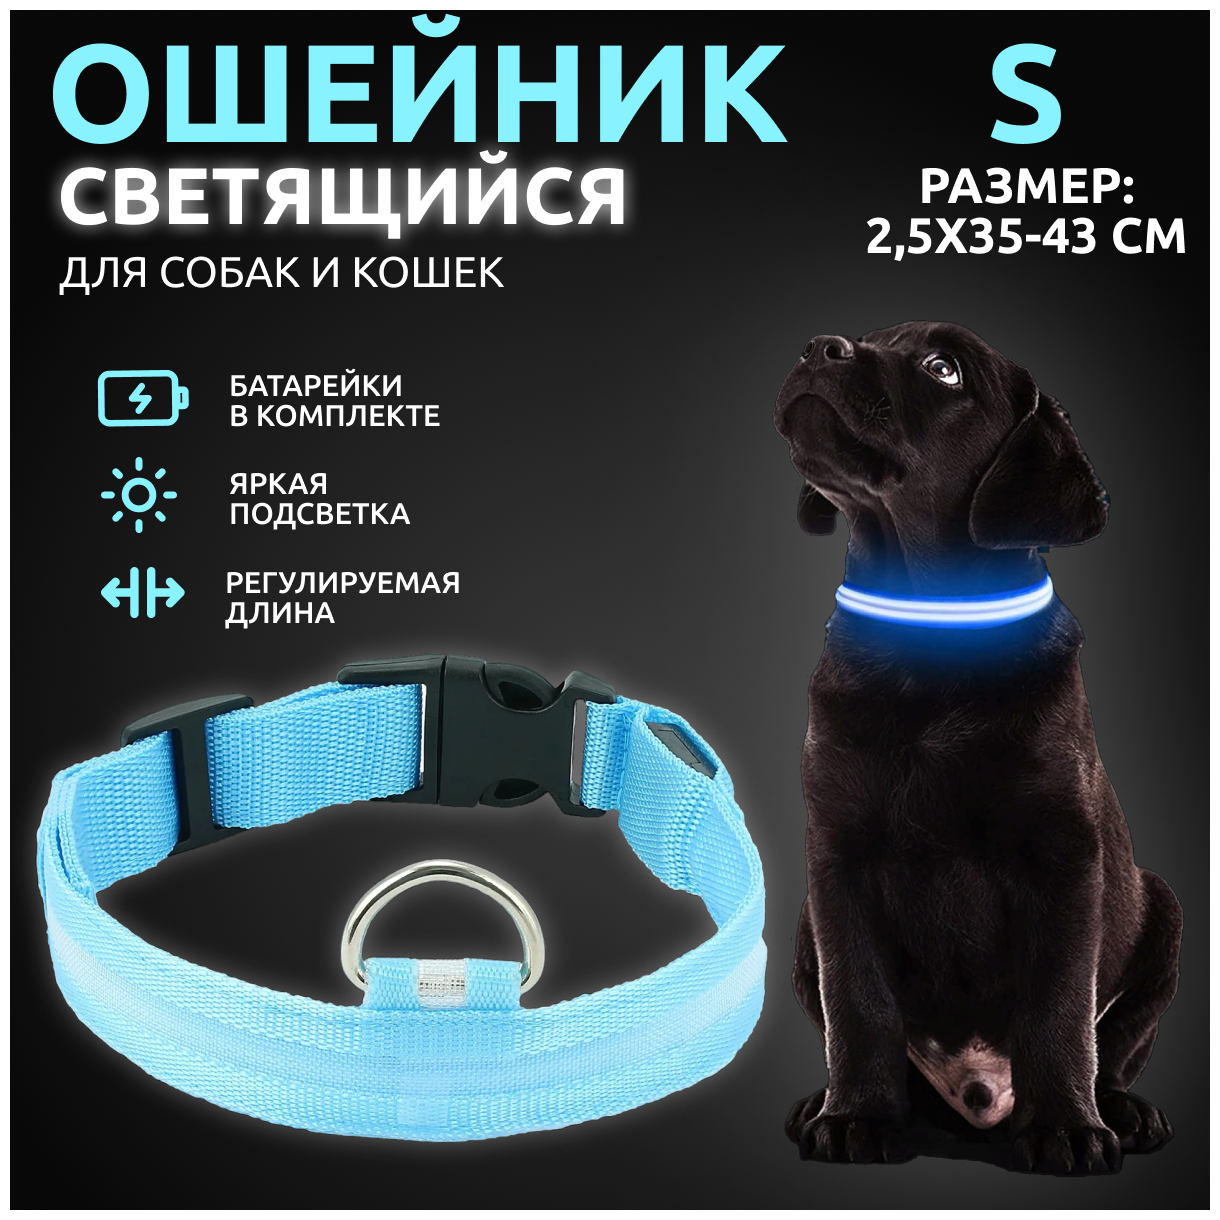 Ошейник светящийся для собак и кошек светодиодный нейлоновый голубого цвета, размер S - 2,5х35-43 см